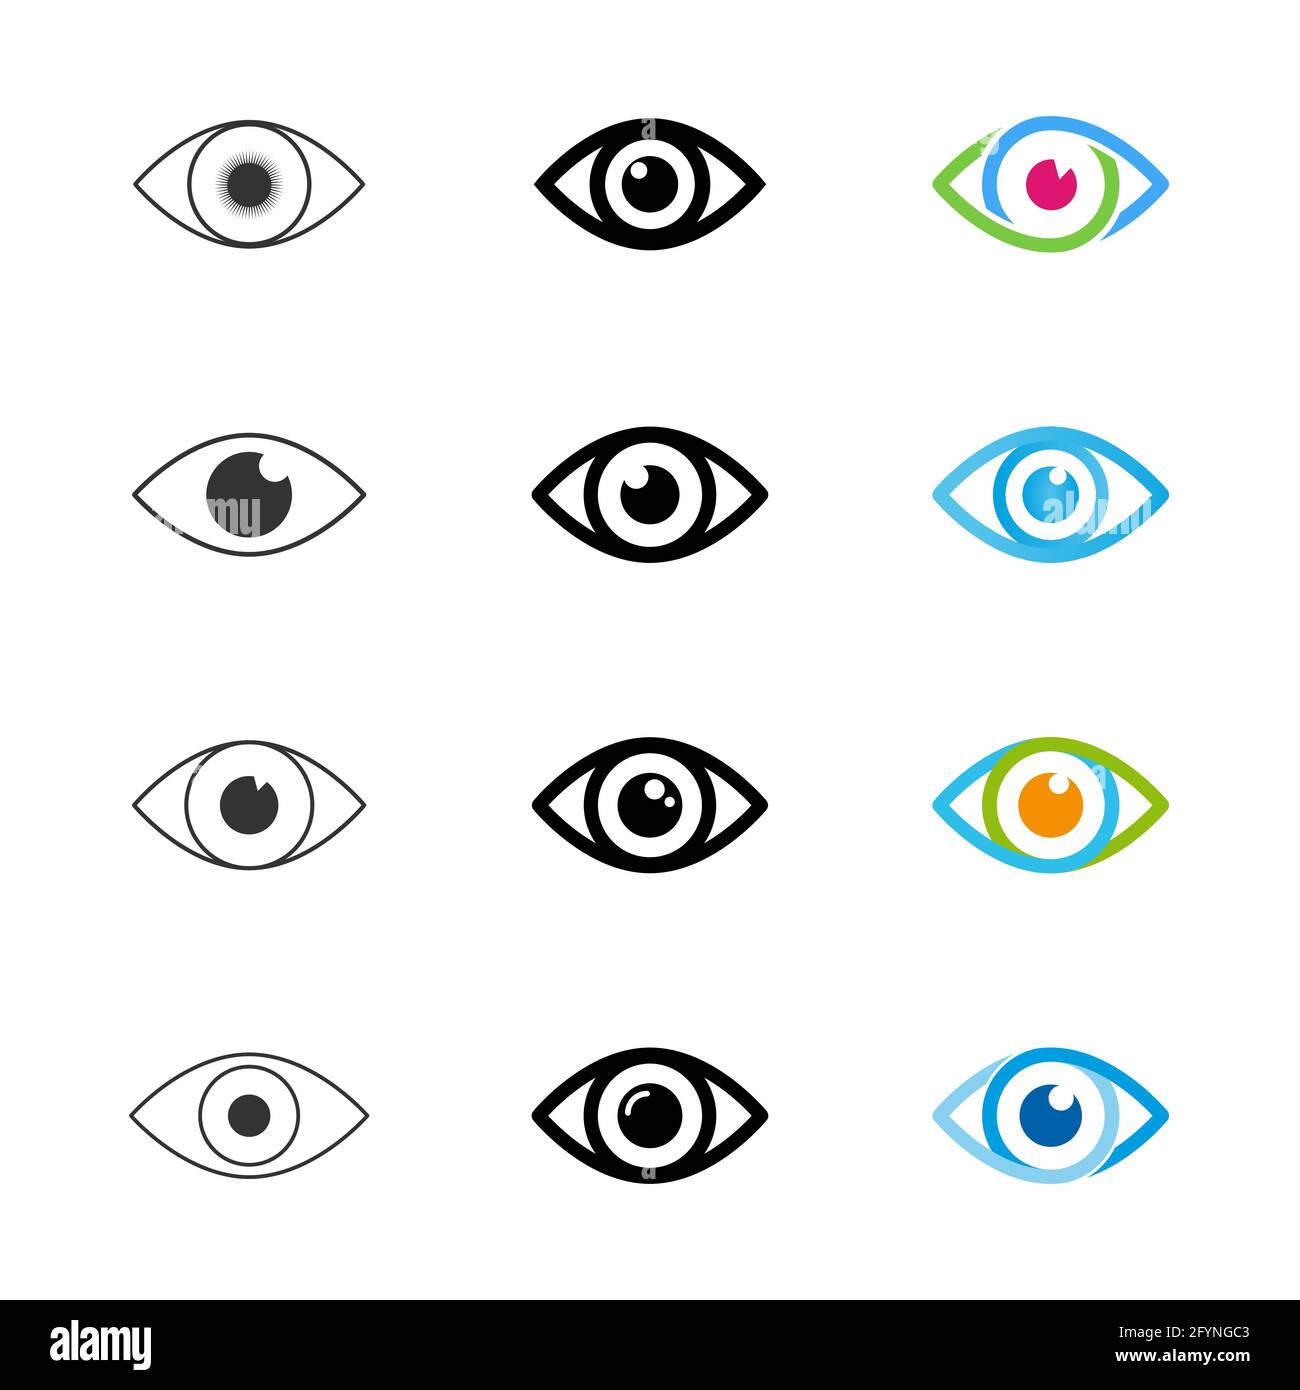 Ensemble d'icônes yeux. Collection de symboles pour les yeux. Illustration vectorielle isolée sur fond blanc. Illustration de Vecteur